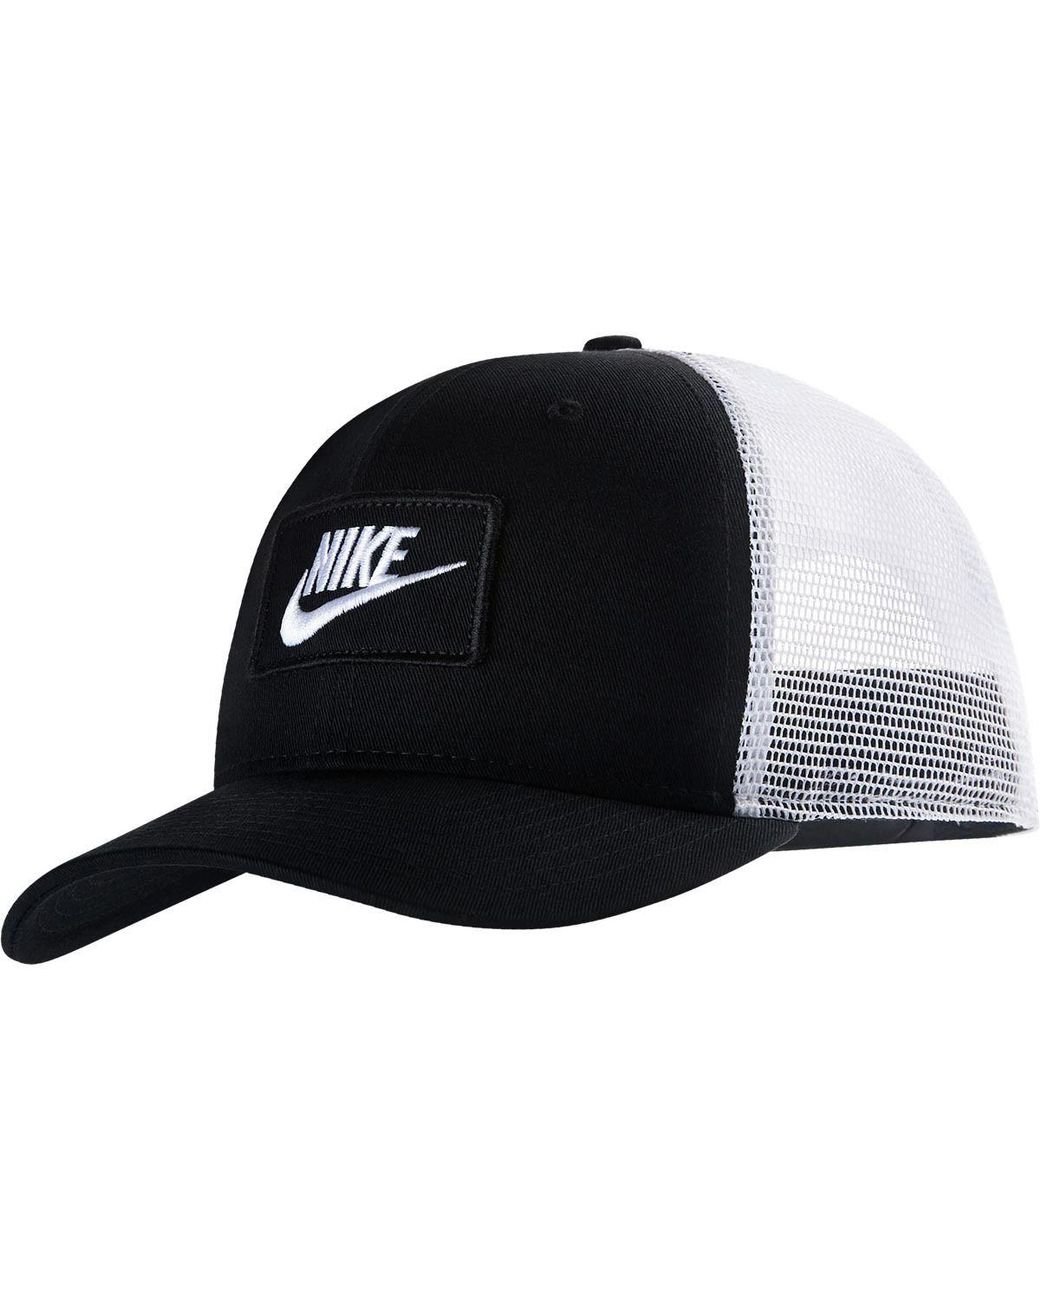 Nike Sportswear Classic99 Trucker Cap in Black for Men